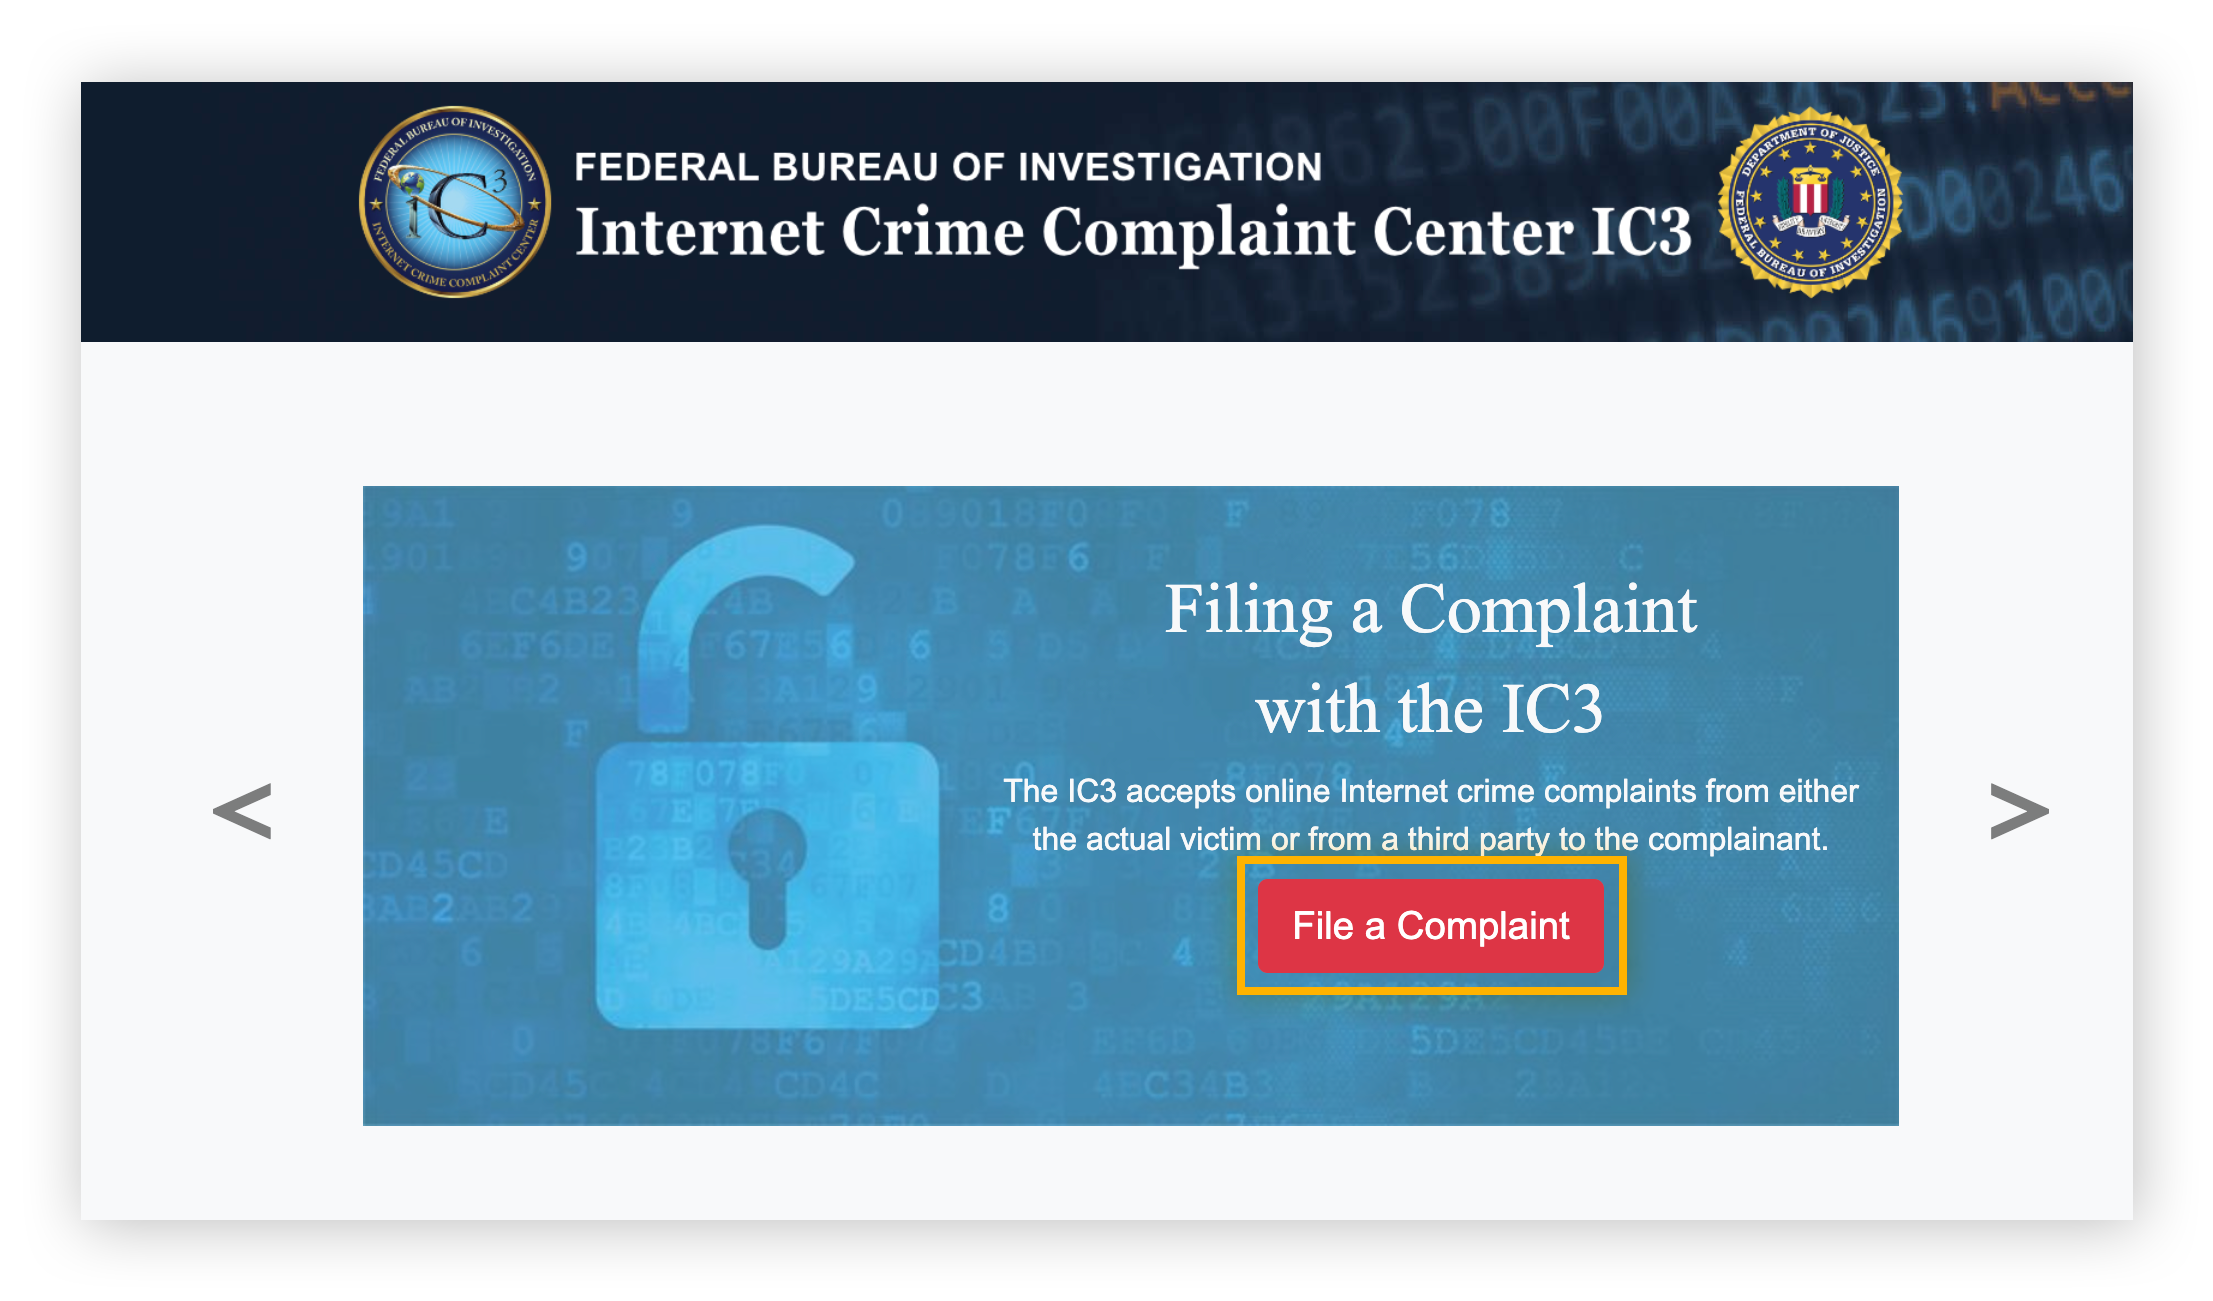 Internetfraude melden aan IC3 met behulp van hun formulier 'File A Complaint'.